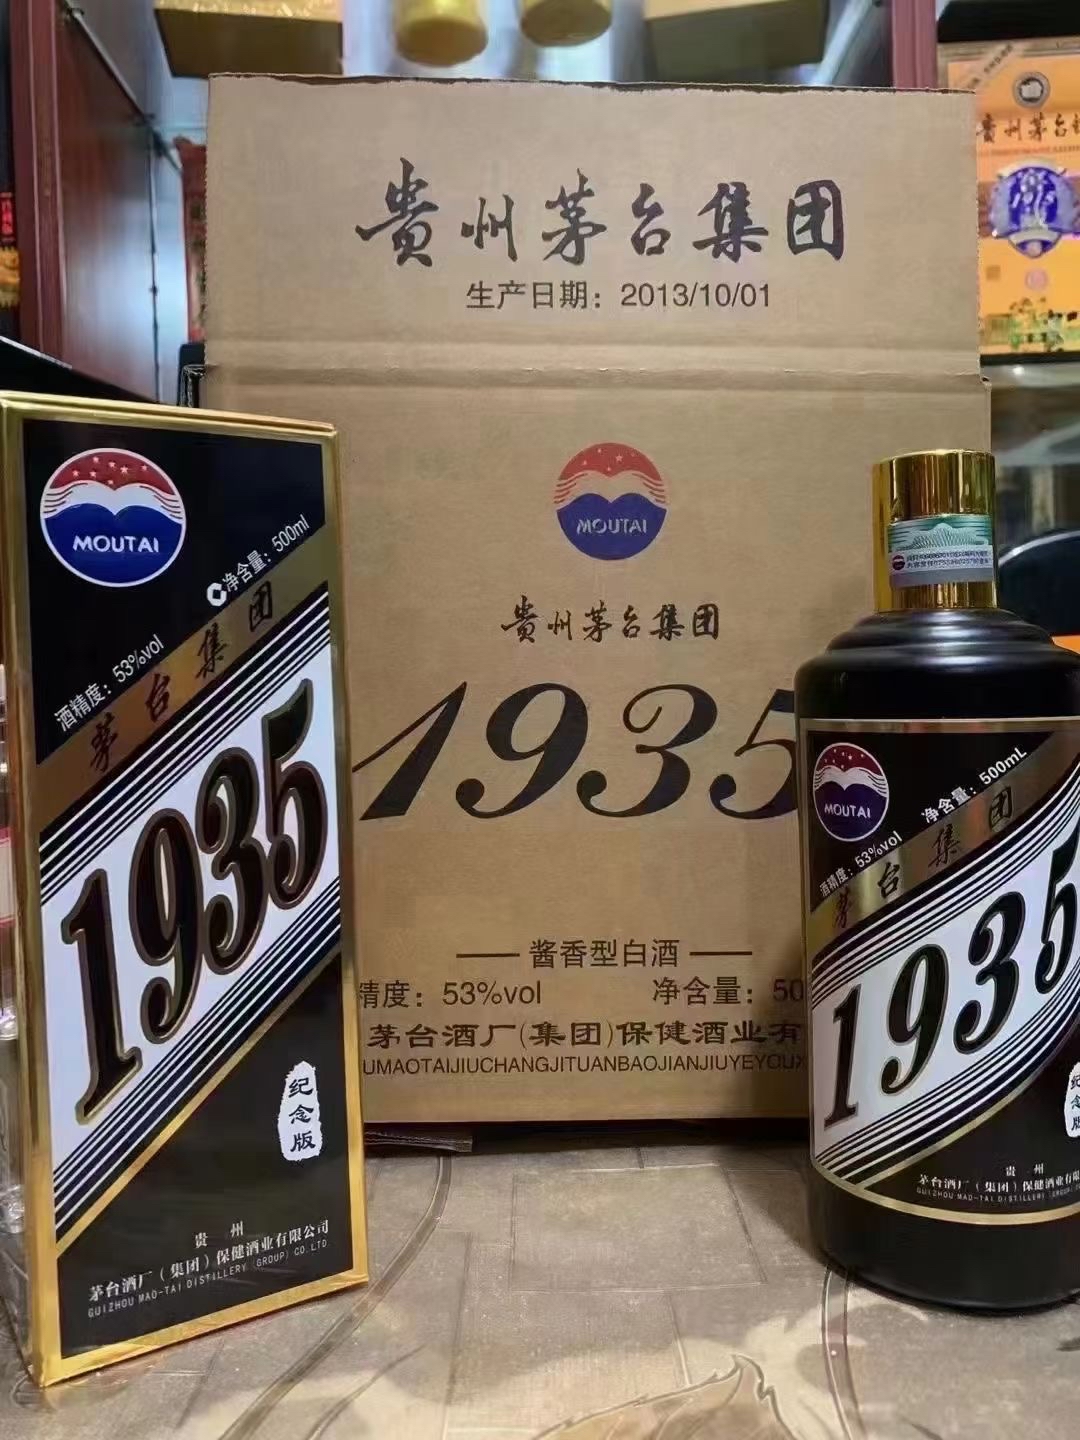 贵州茅台集团1935纪念酒